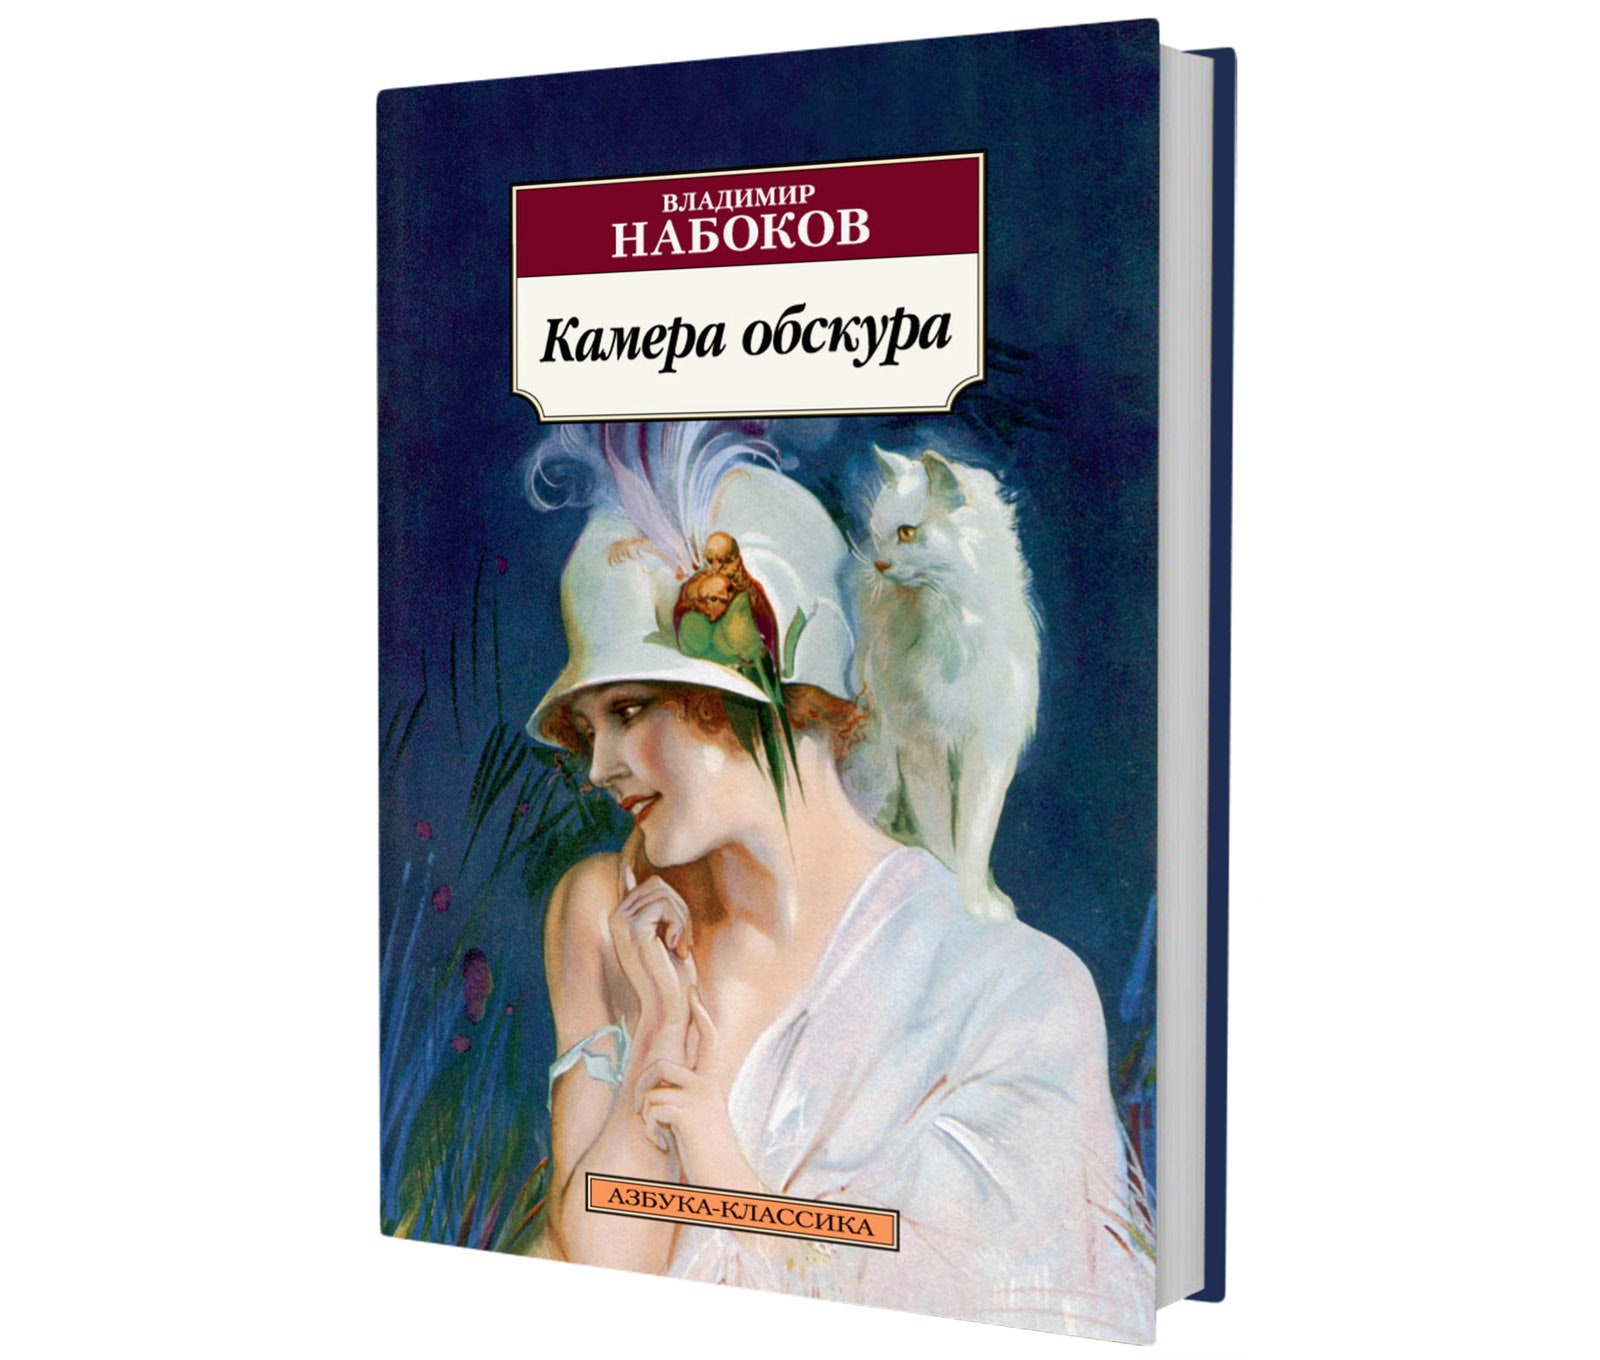 Не только «Лолита» 5 книг Владимира Набокова которые стоит прочитать